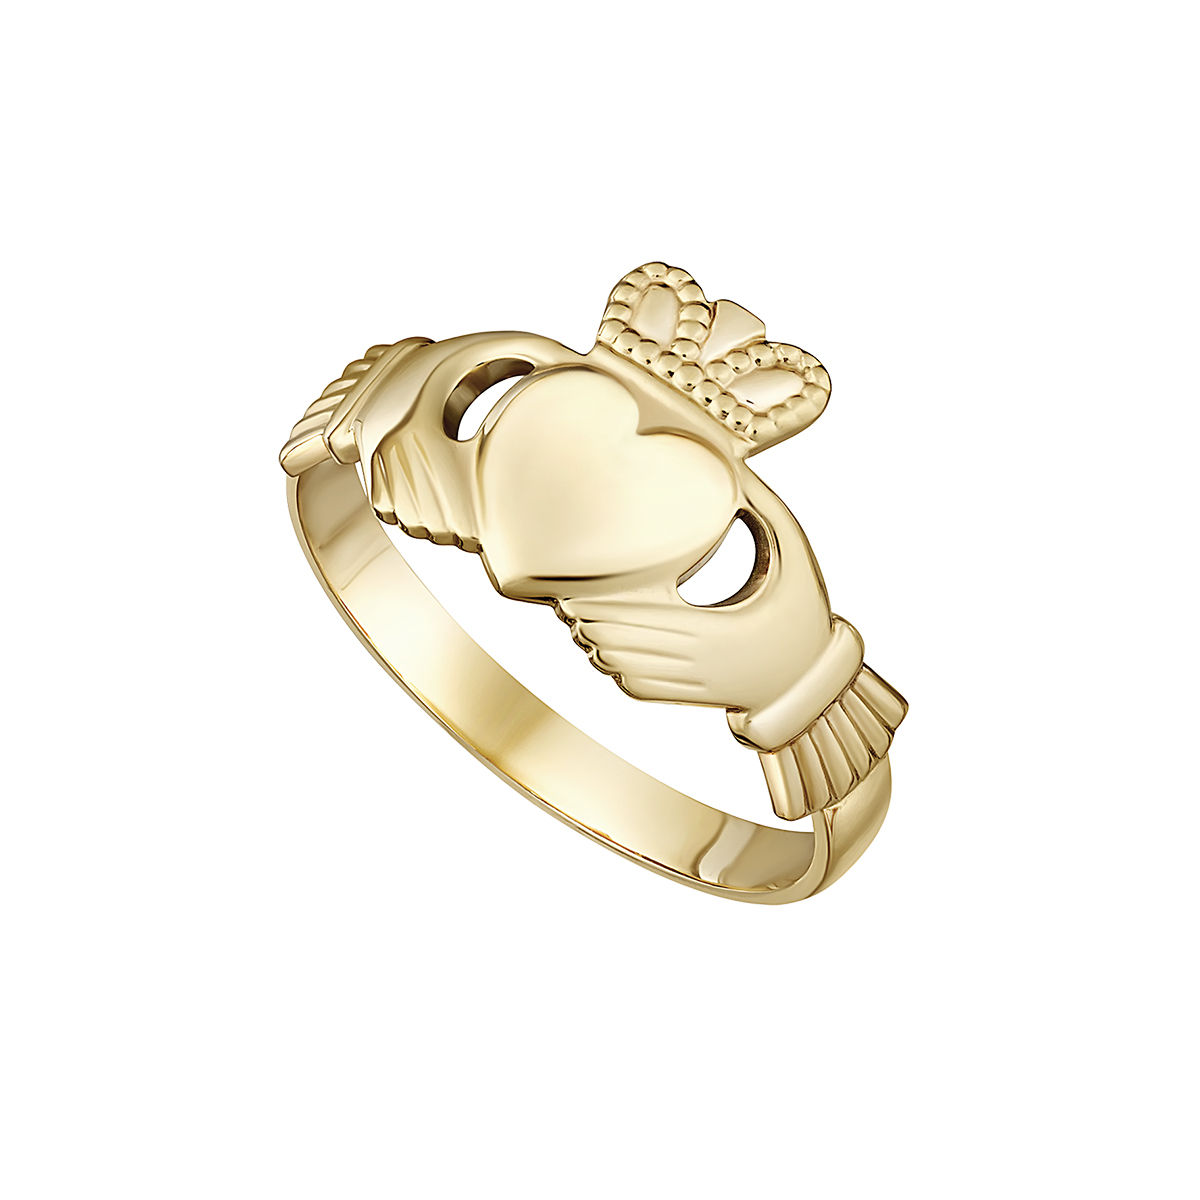 10K Gold Irish Claddagh Ring